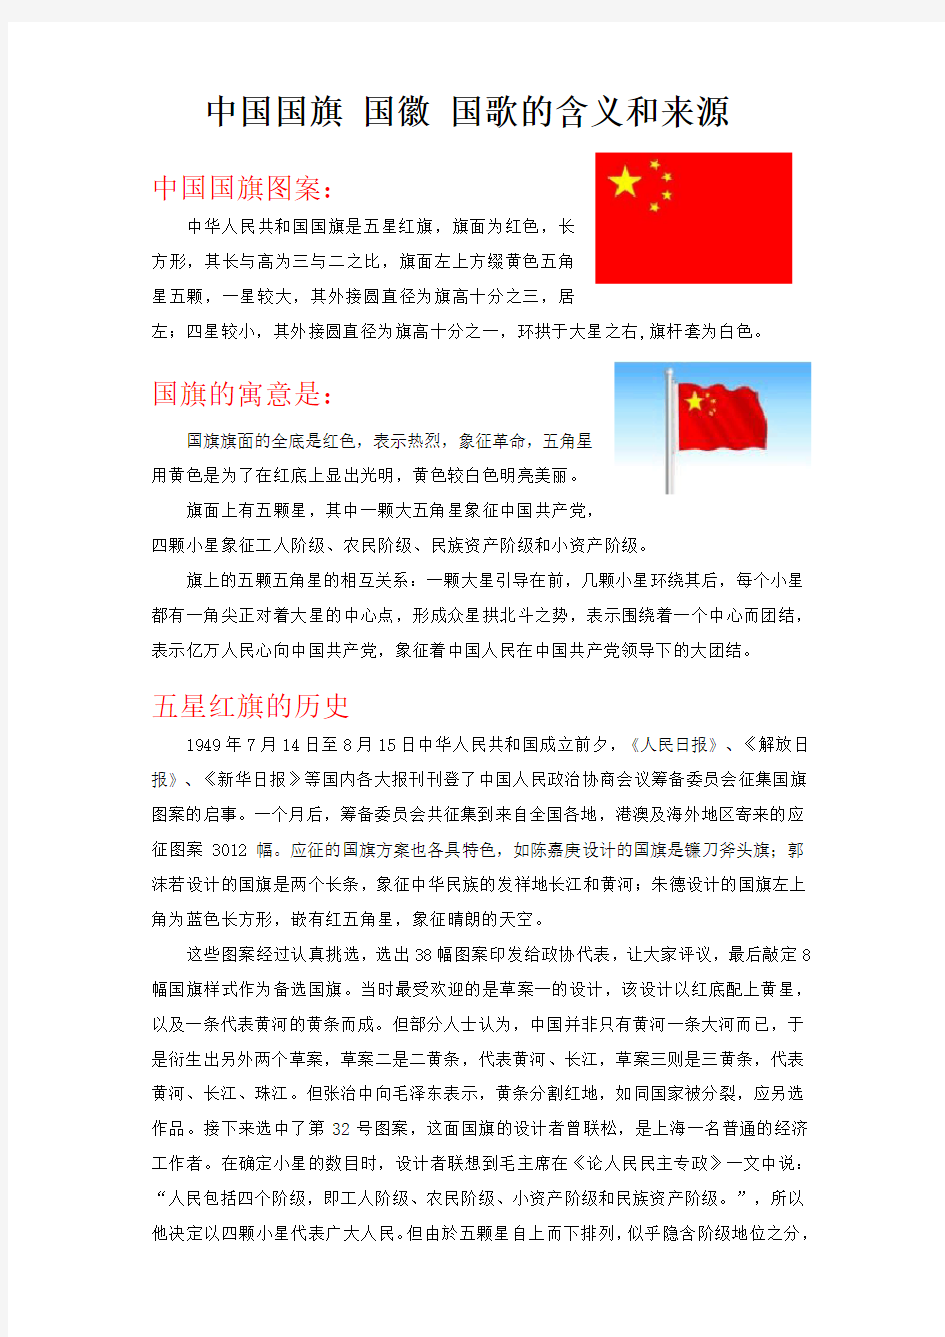 中国国旗-国徽-国歌的含义和来源.